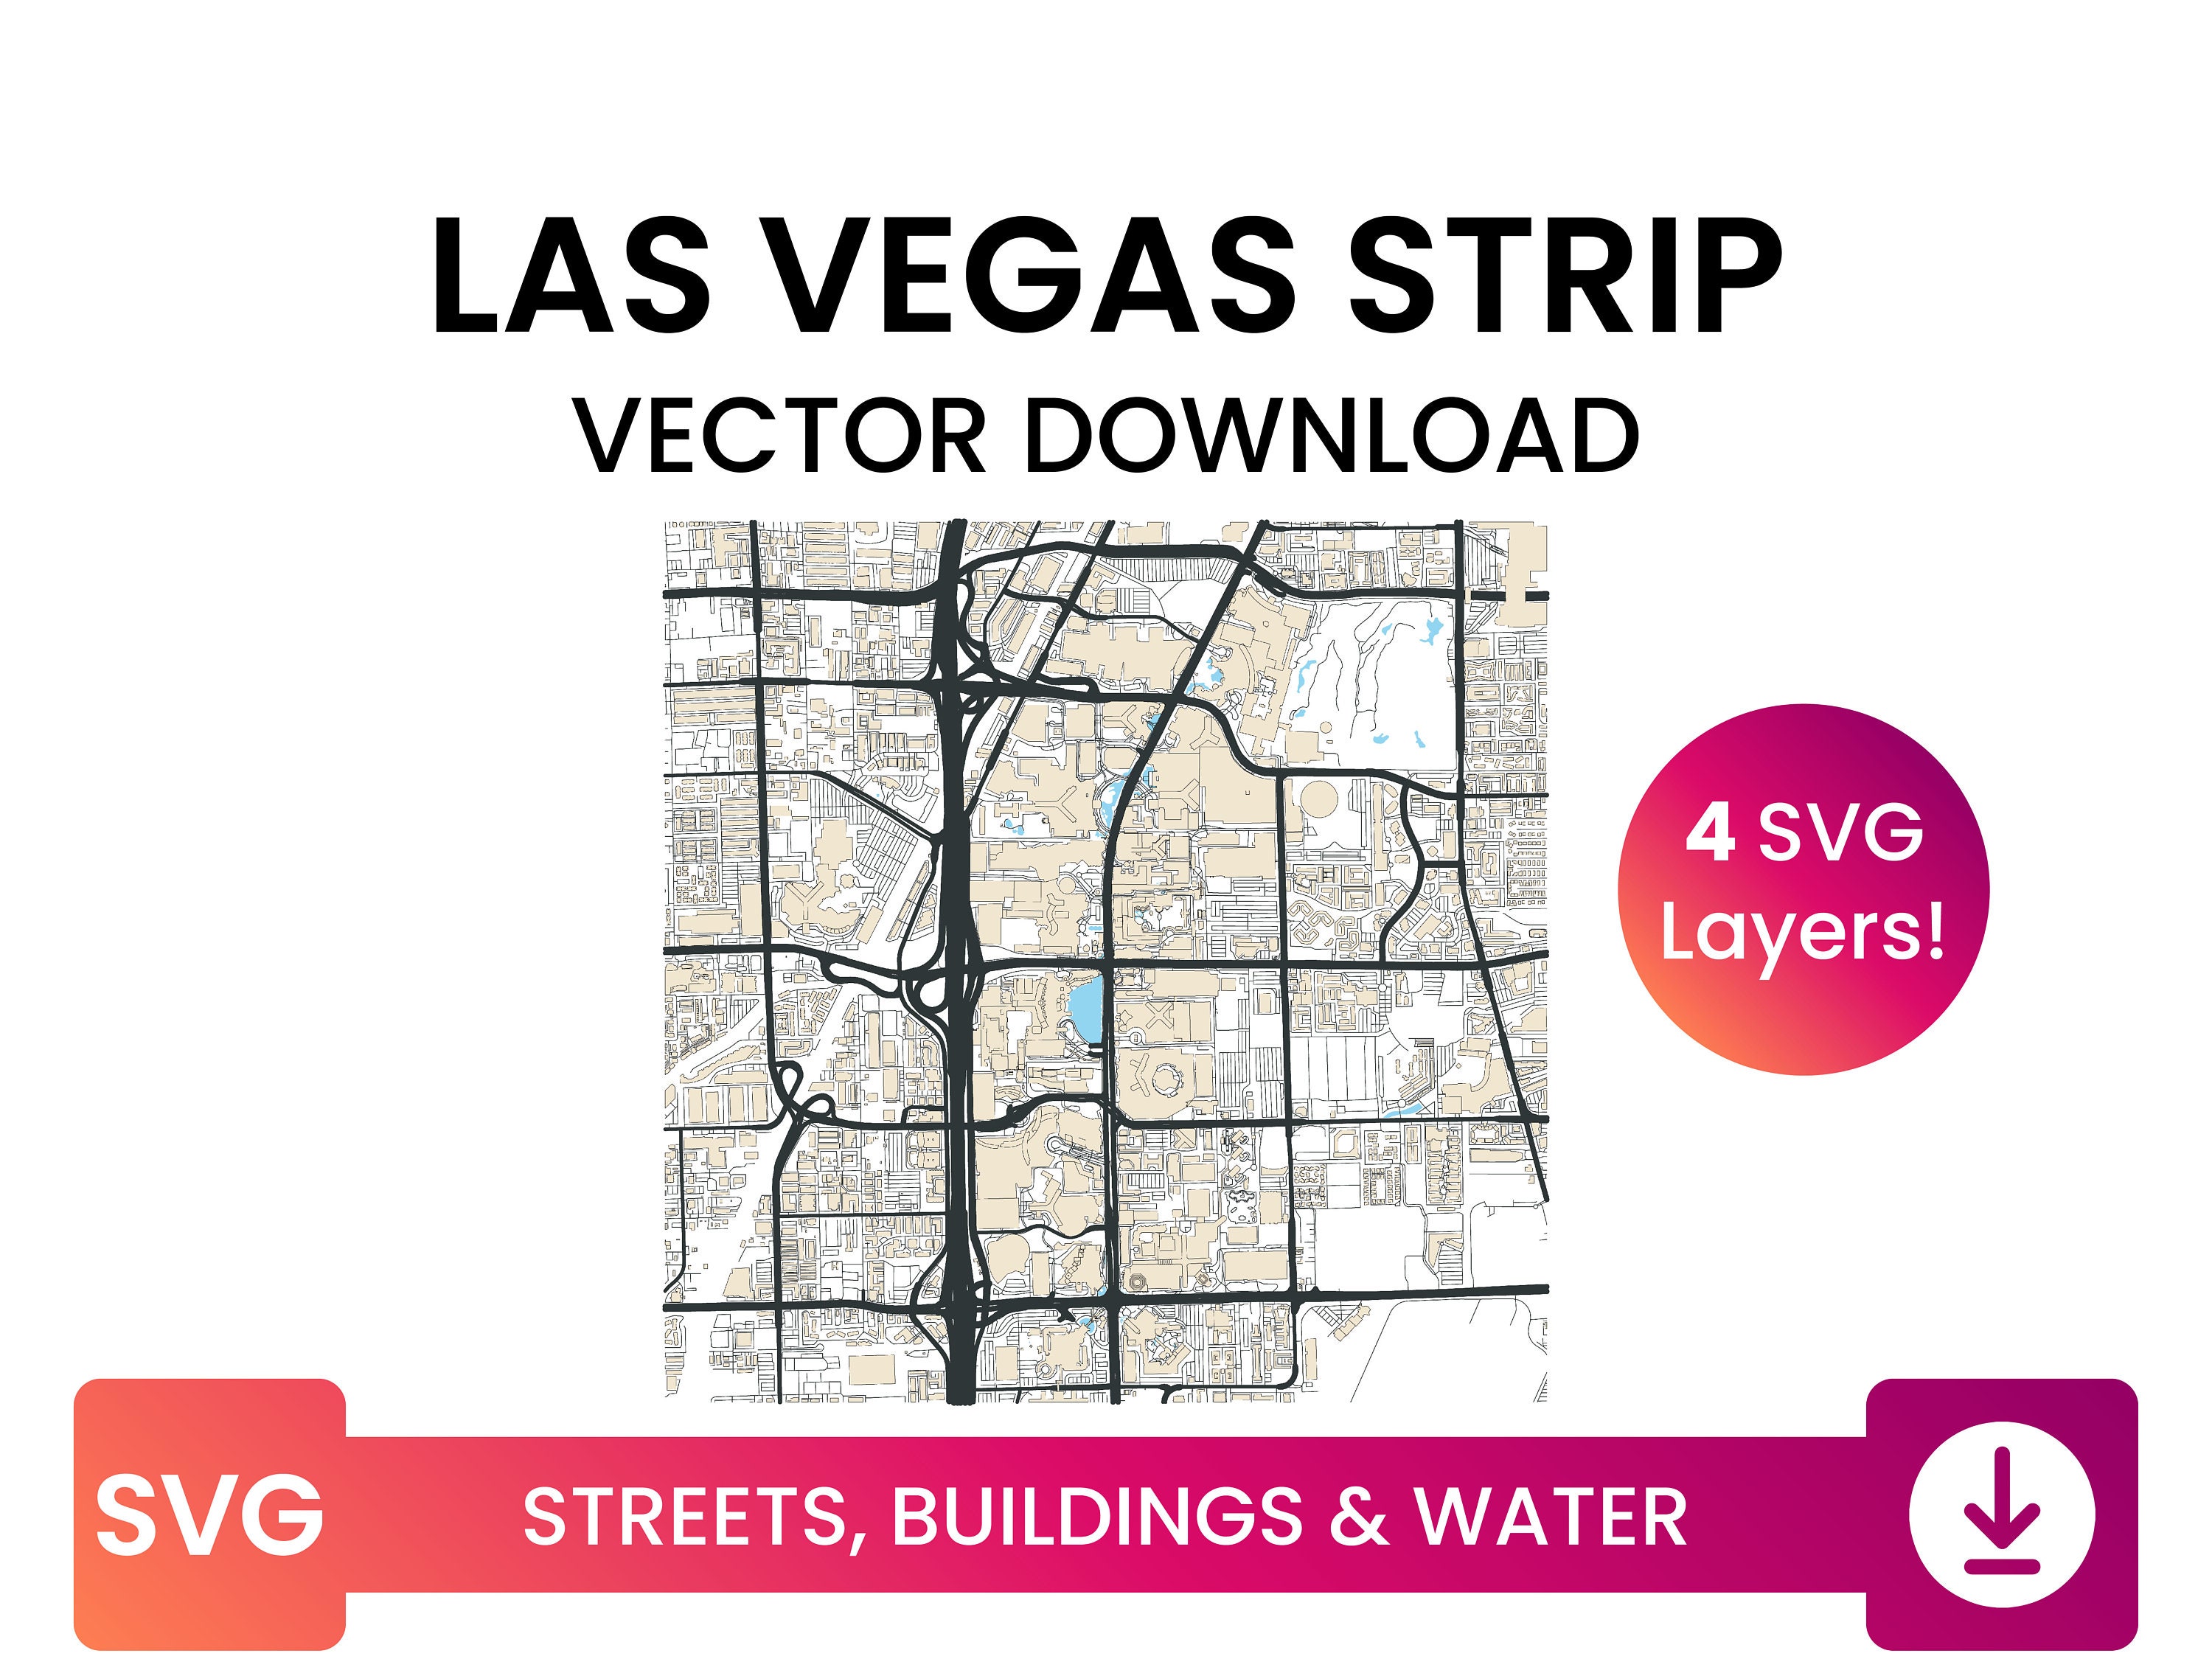 Street Network Building Footprints & Waterbodies of Las Vegas 